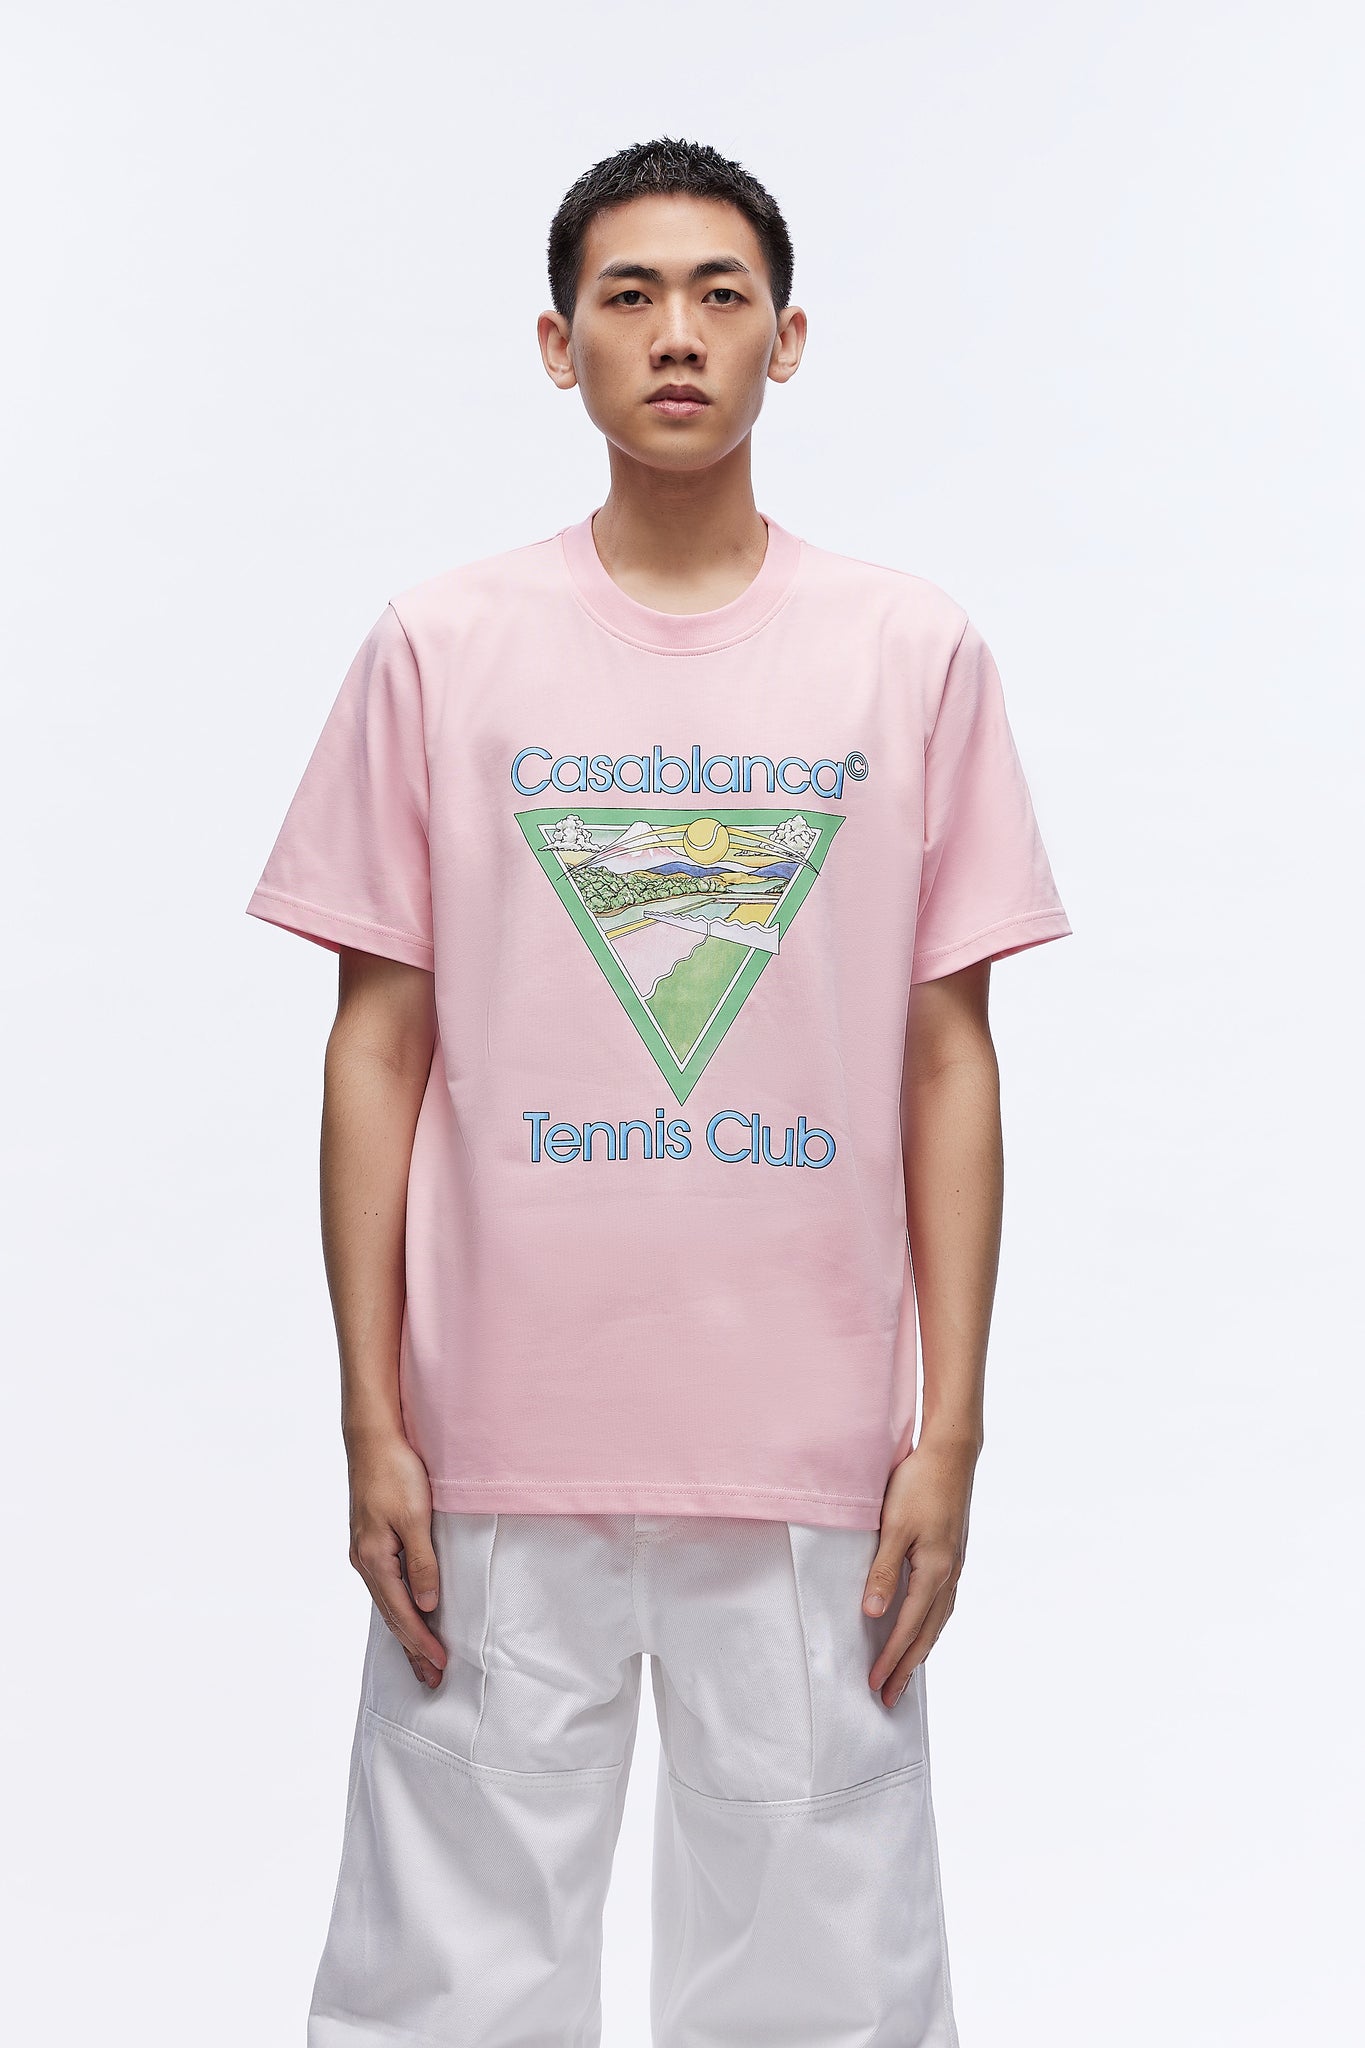 CASABLANCA Printed T-Shirt Tennis CLUB Icon 2